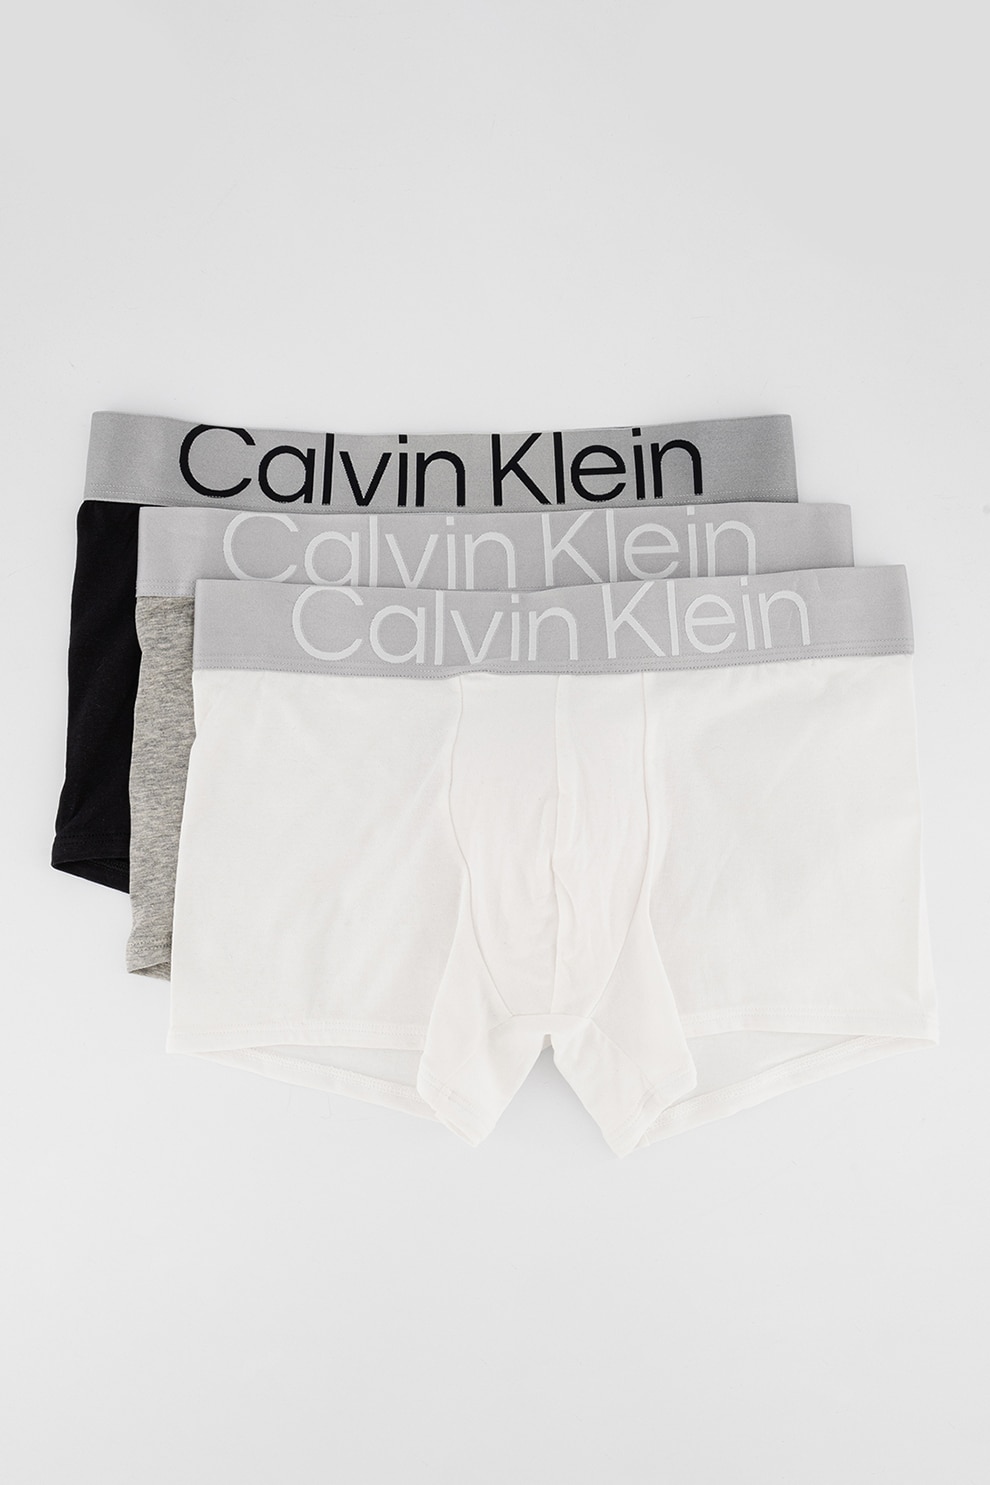 Set de lenjerie intima Calvin Klein, Gri, marimea S 